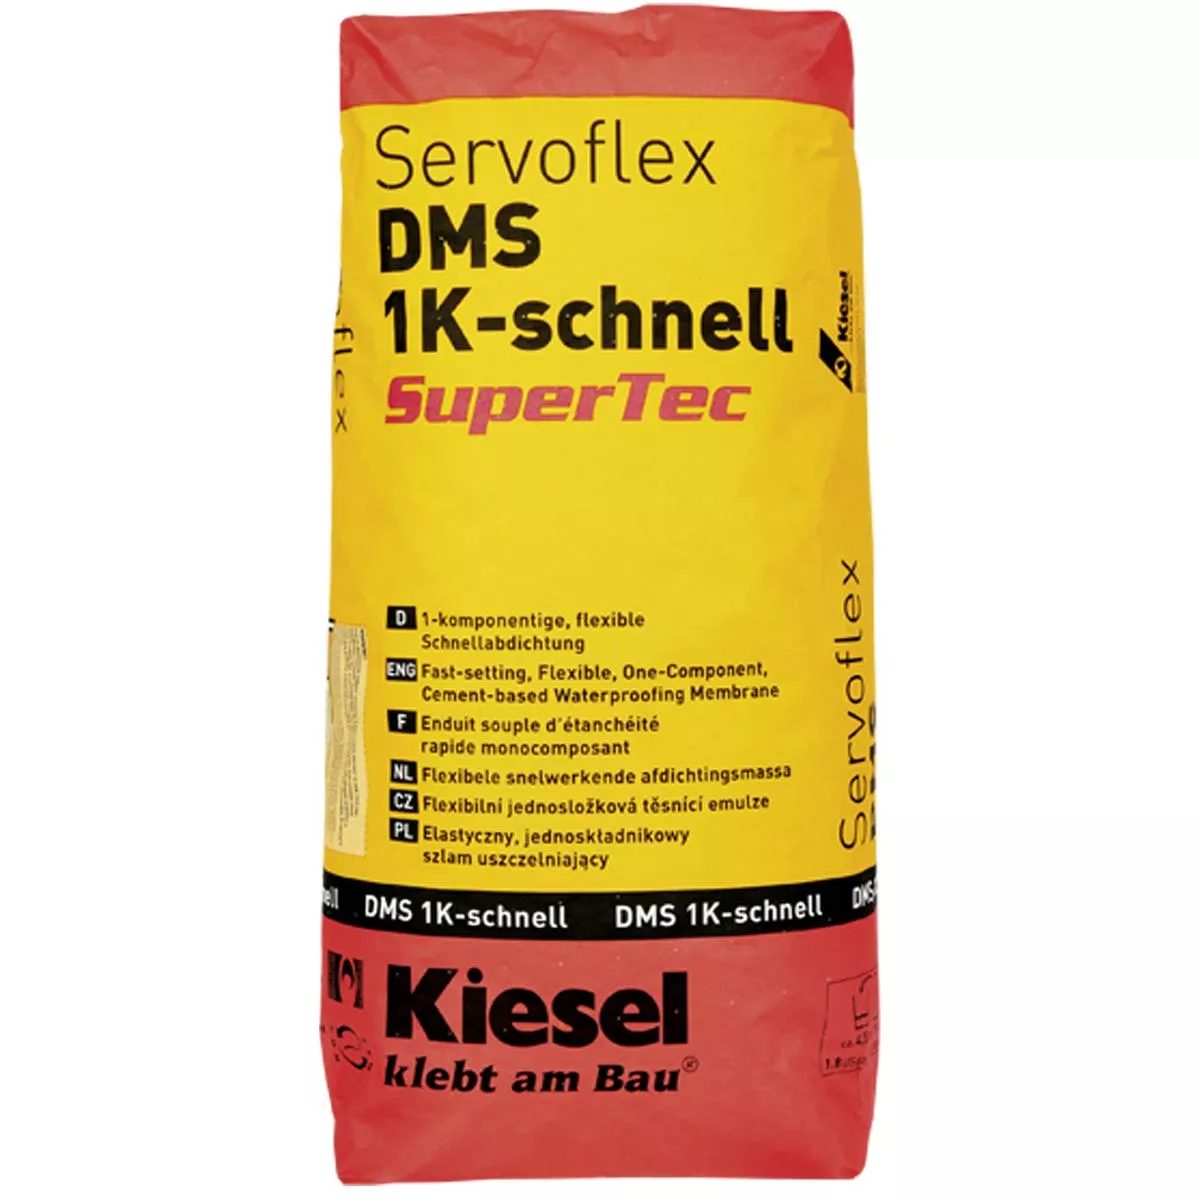 Selbstverlaufende Abdichtung Kiesel Servoflex DMS 1K-Schnell 15 Kg